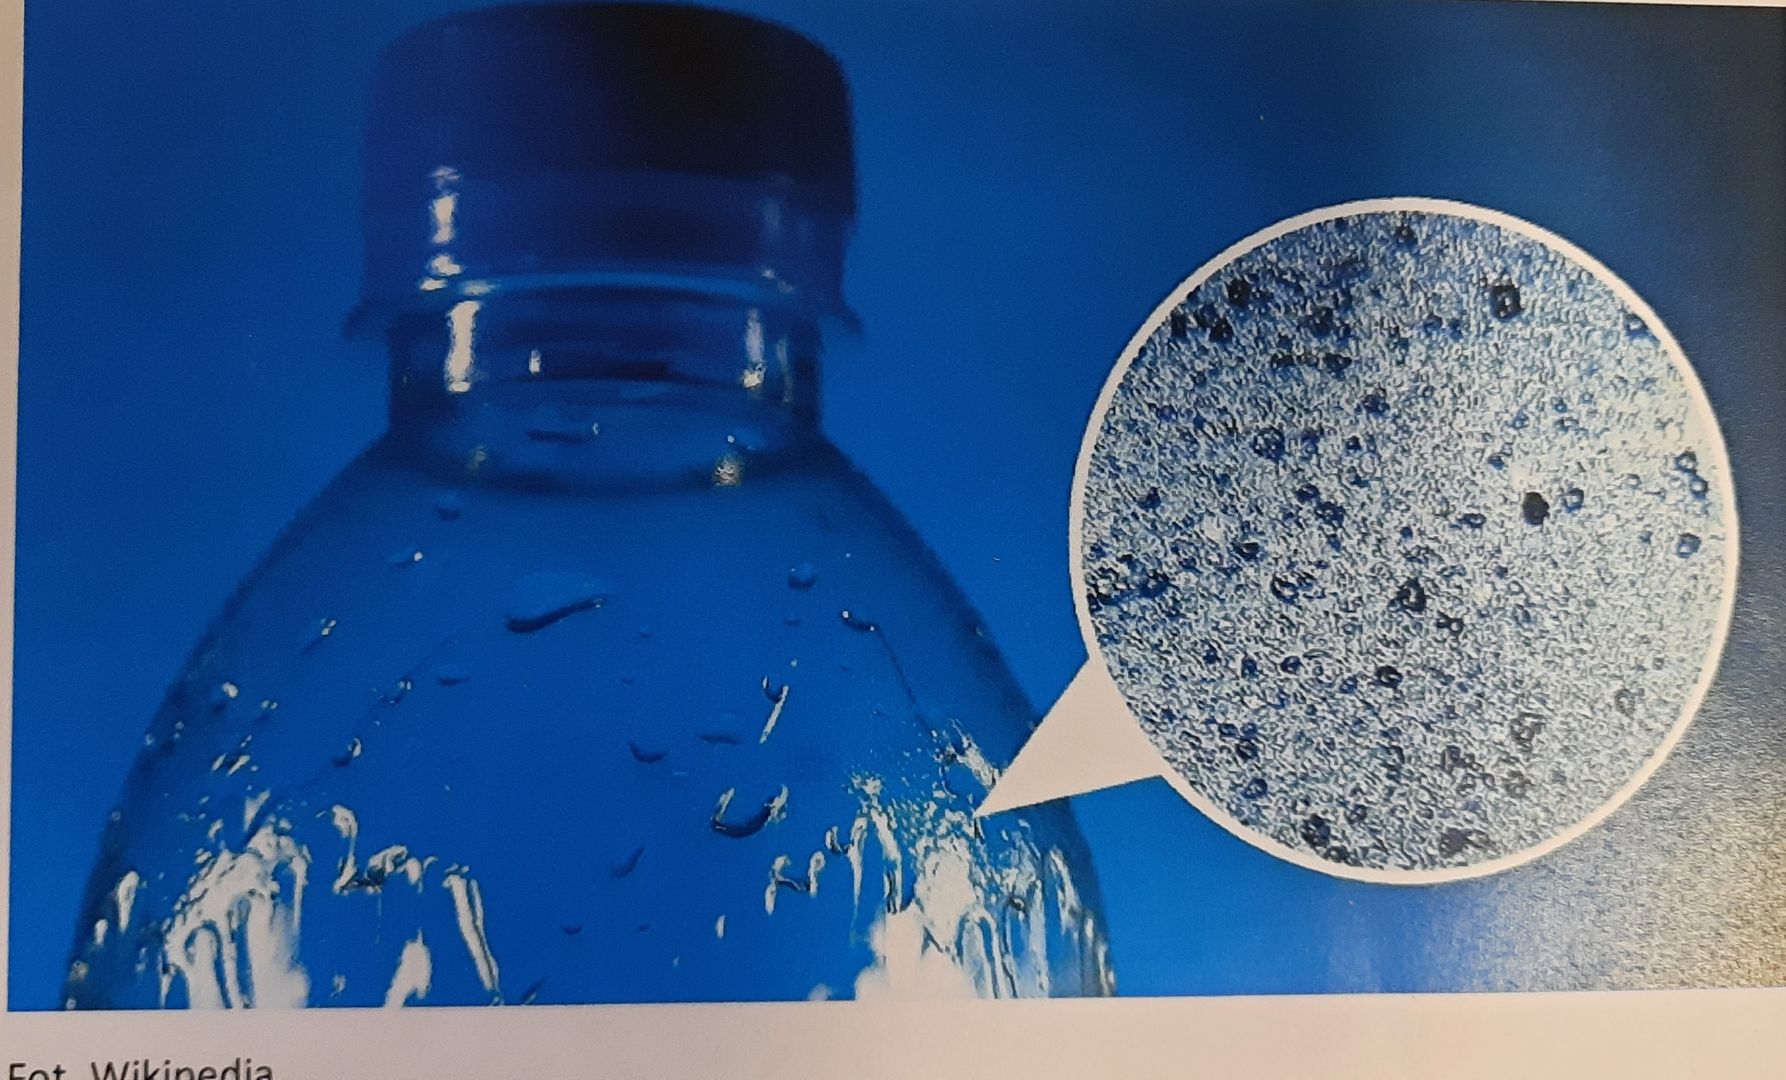 Zdjęcie przedstawia butelkę plastikową oraz jej zbliżenie pokazują strukturę plastiku